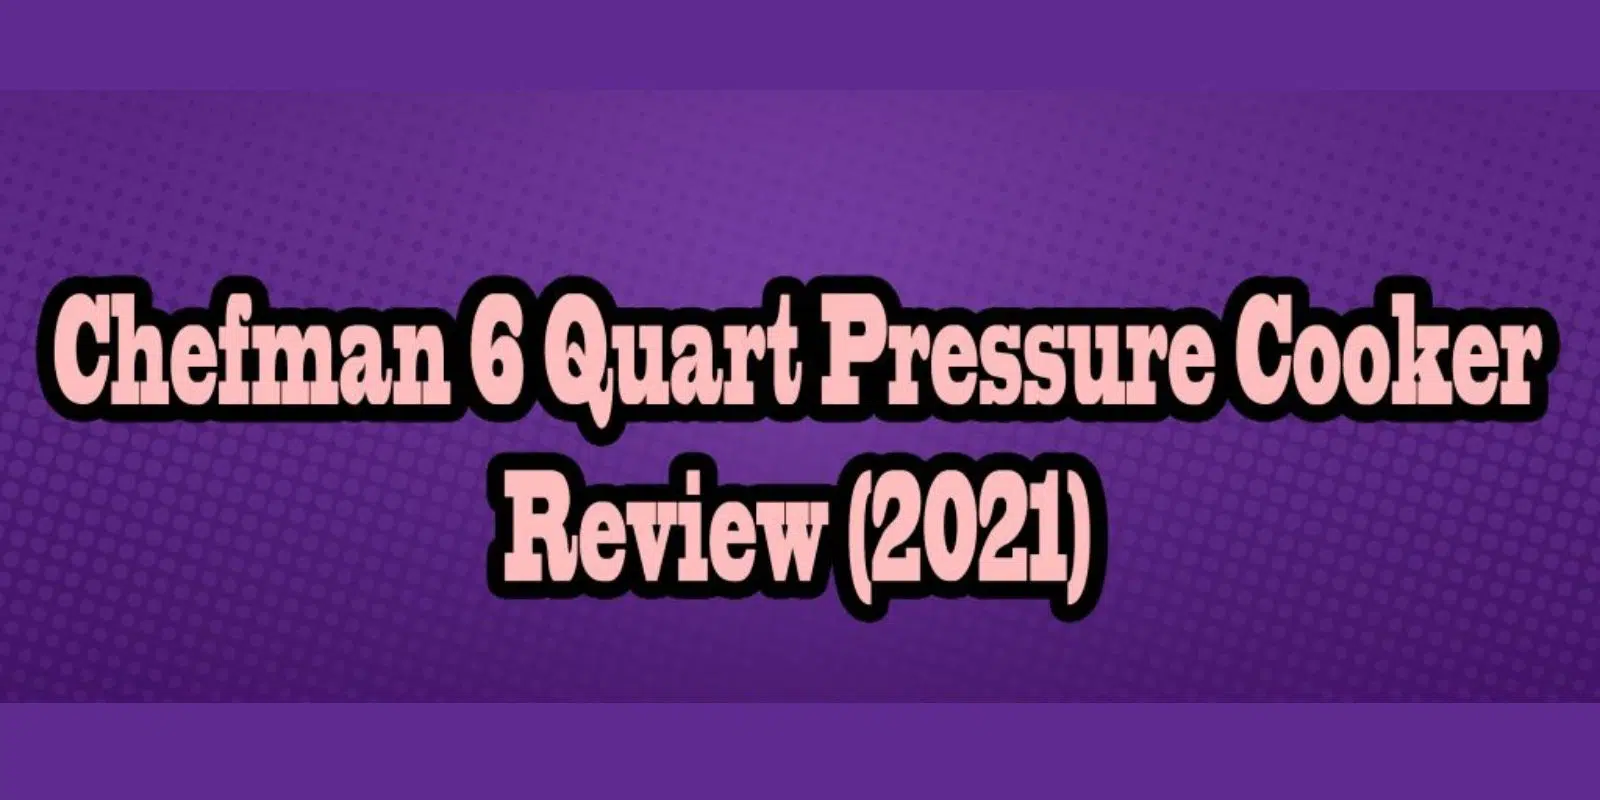 Chefman 6 Quart Pressure Cooker Review – (2021)